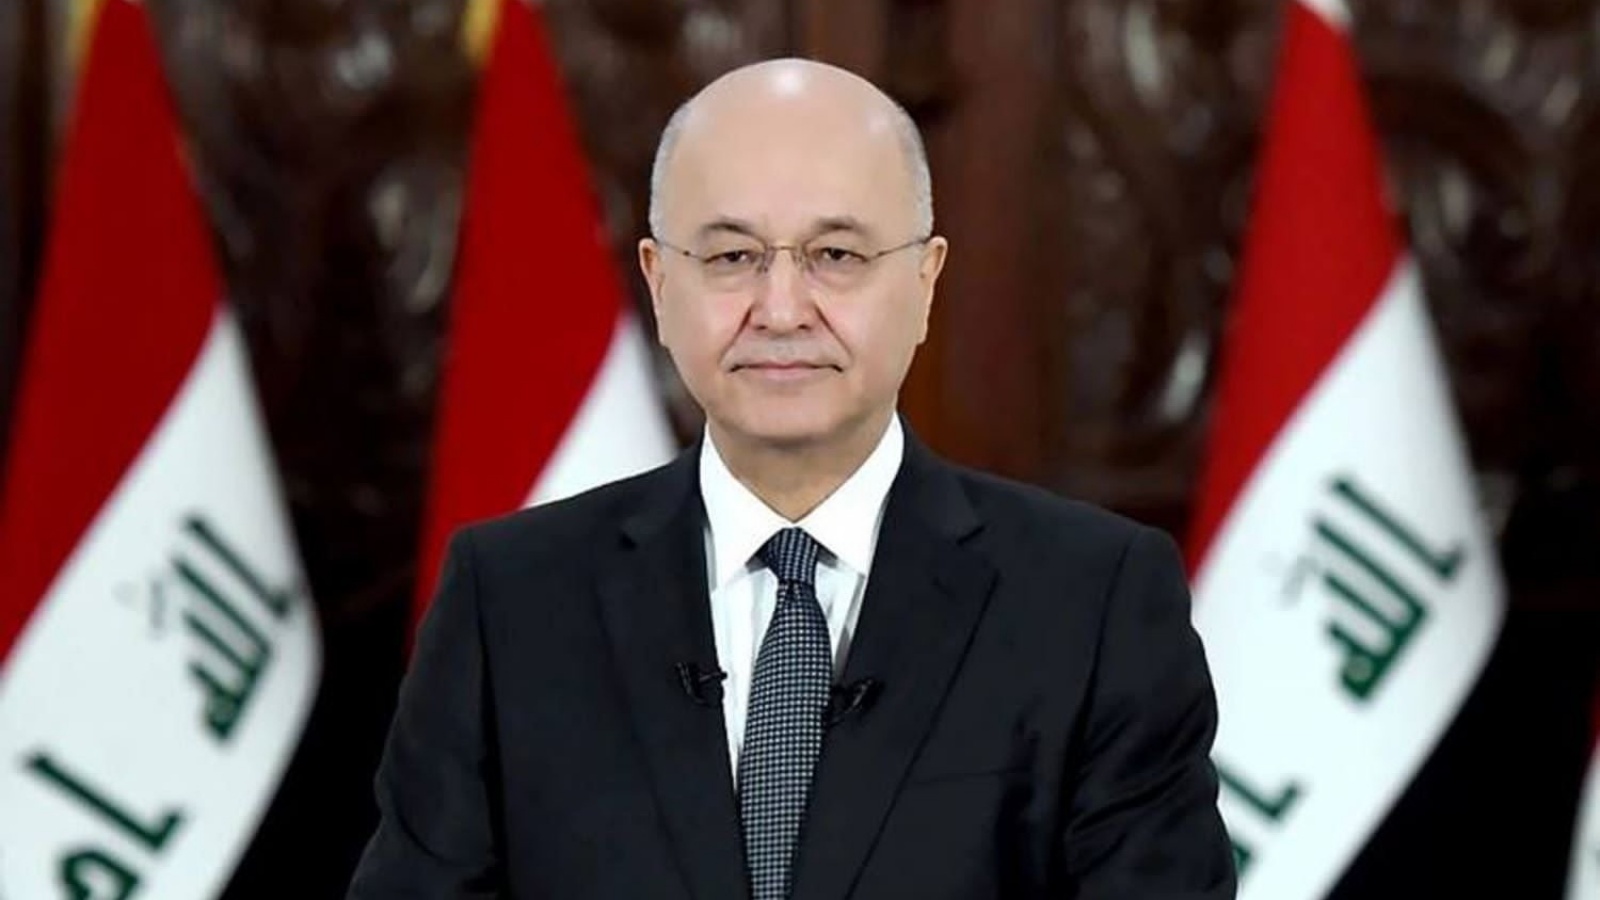 الرئيس العراقي برهم صالح سيخوض اليوم الخميس السباق الرئاسي نحو ولاية ثانية في رئاسة البلاد (مكتبه)